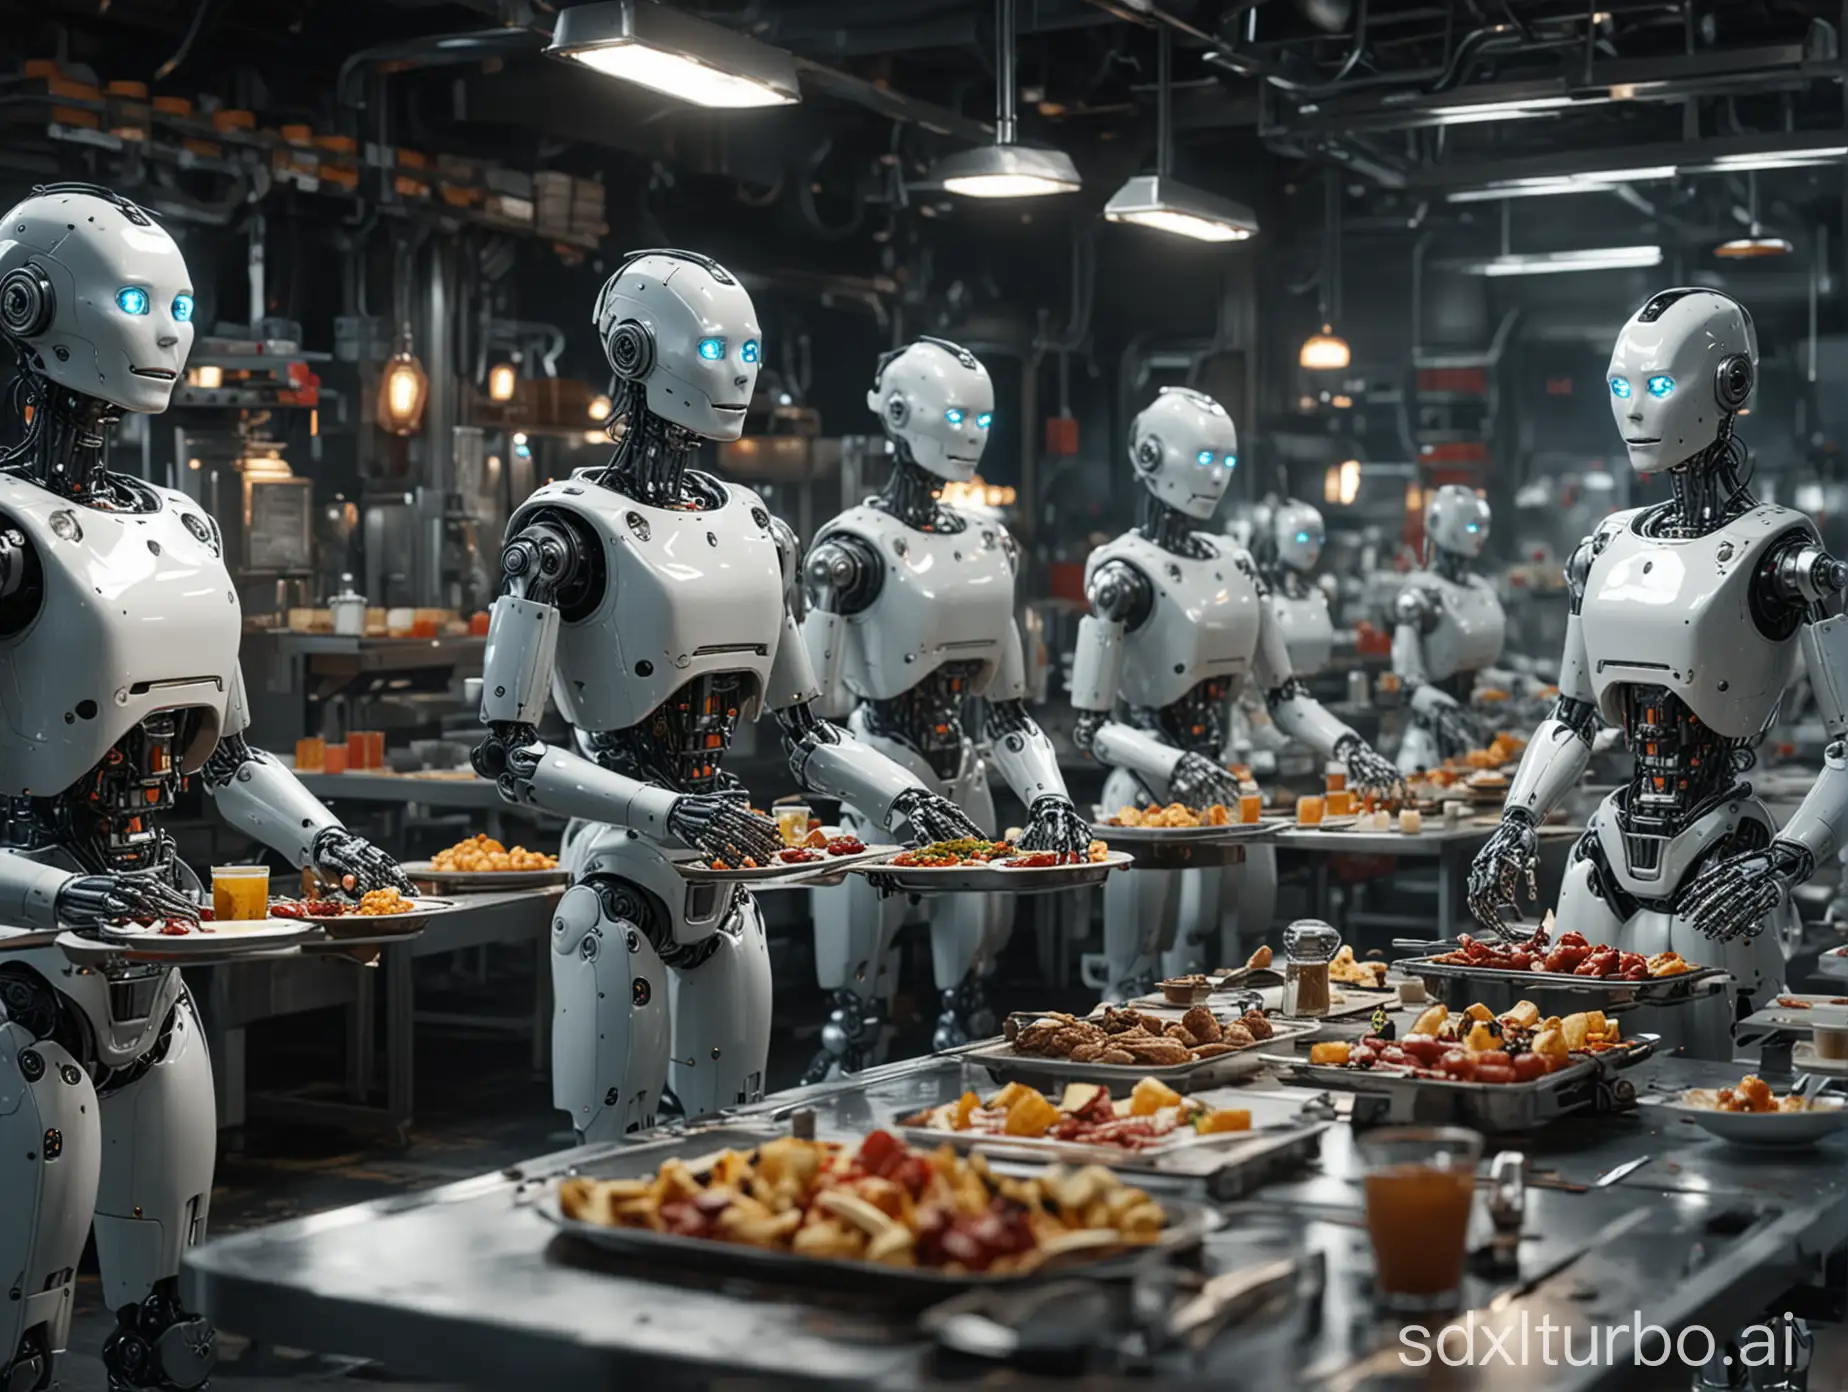 Robots restaurant 8k real scene assembly line